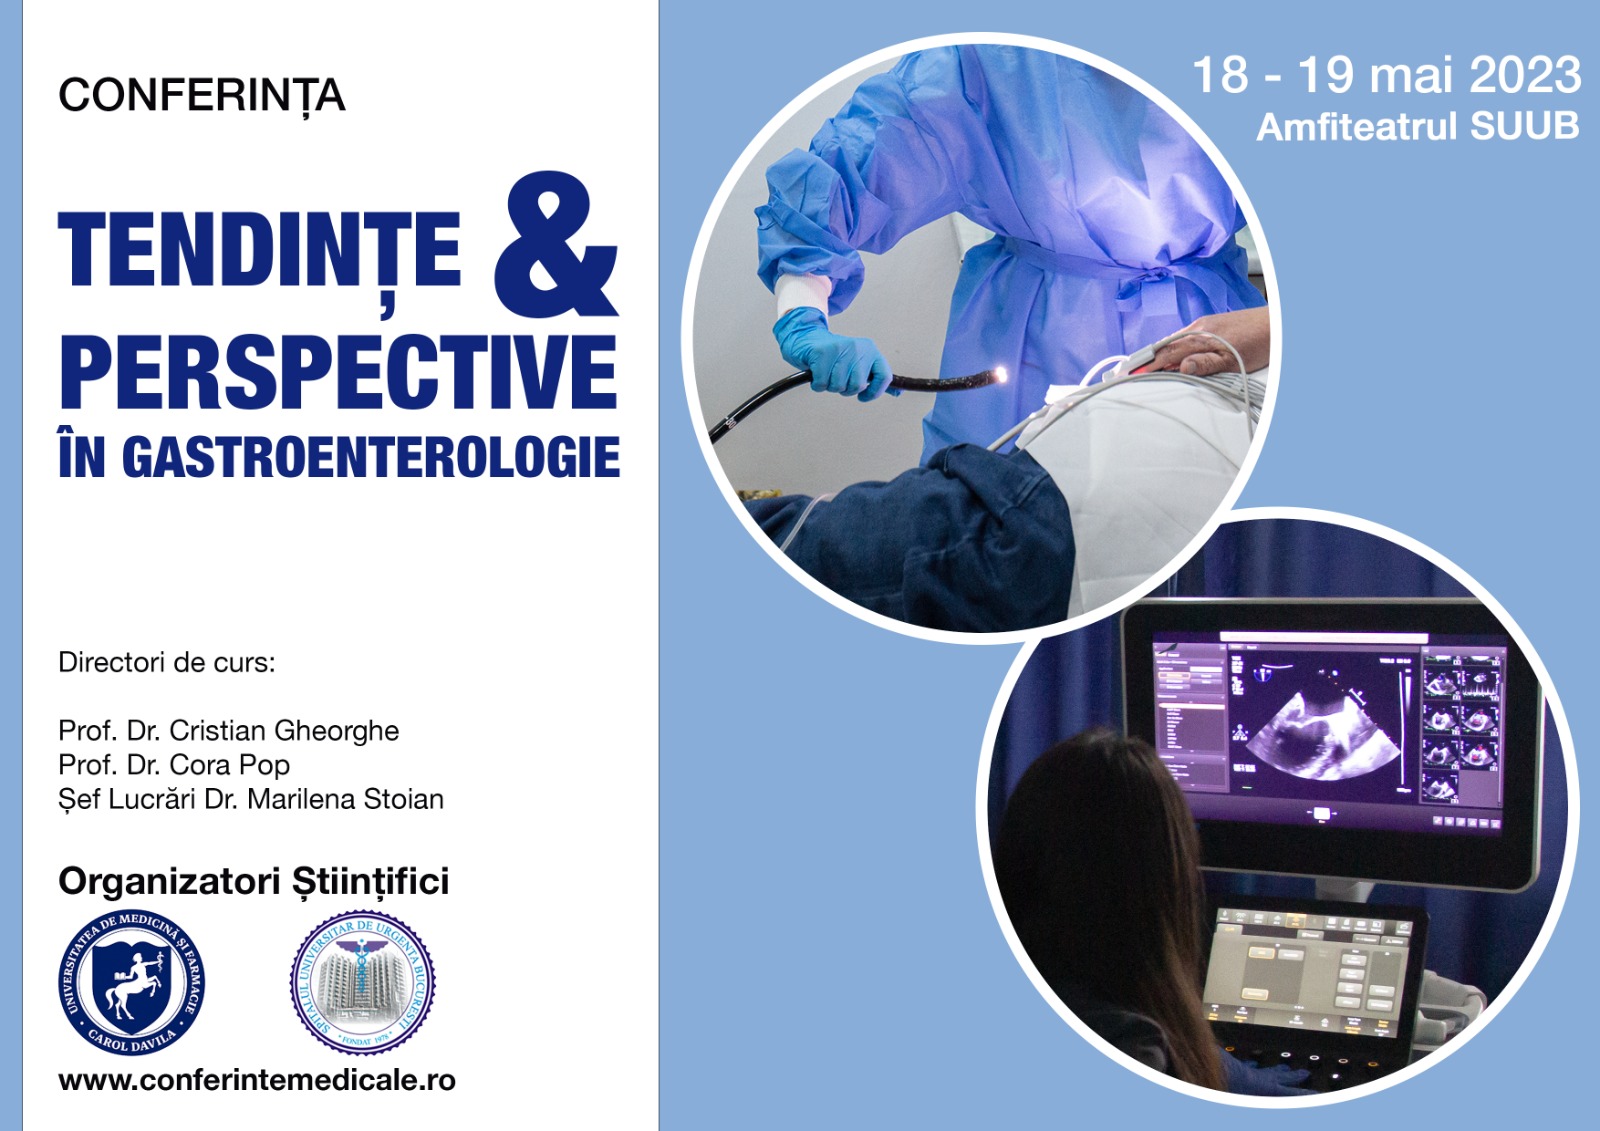 Conferința „Tendințe și perspective în gastroenterologie” are loc la SUUB